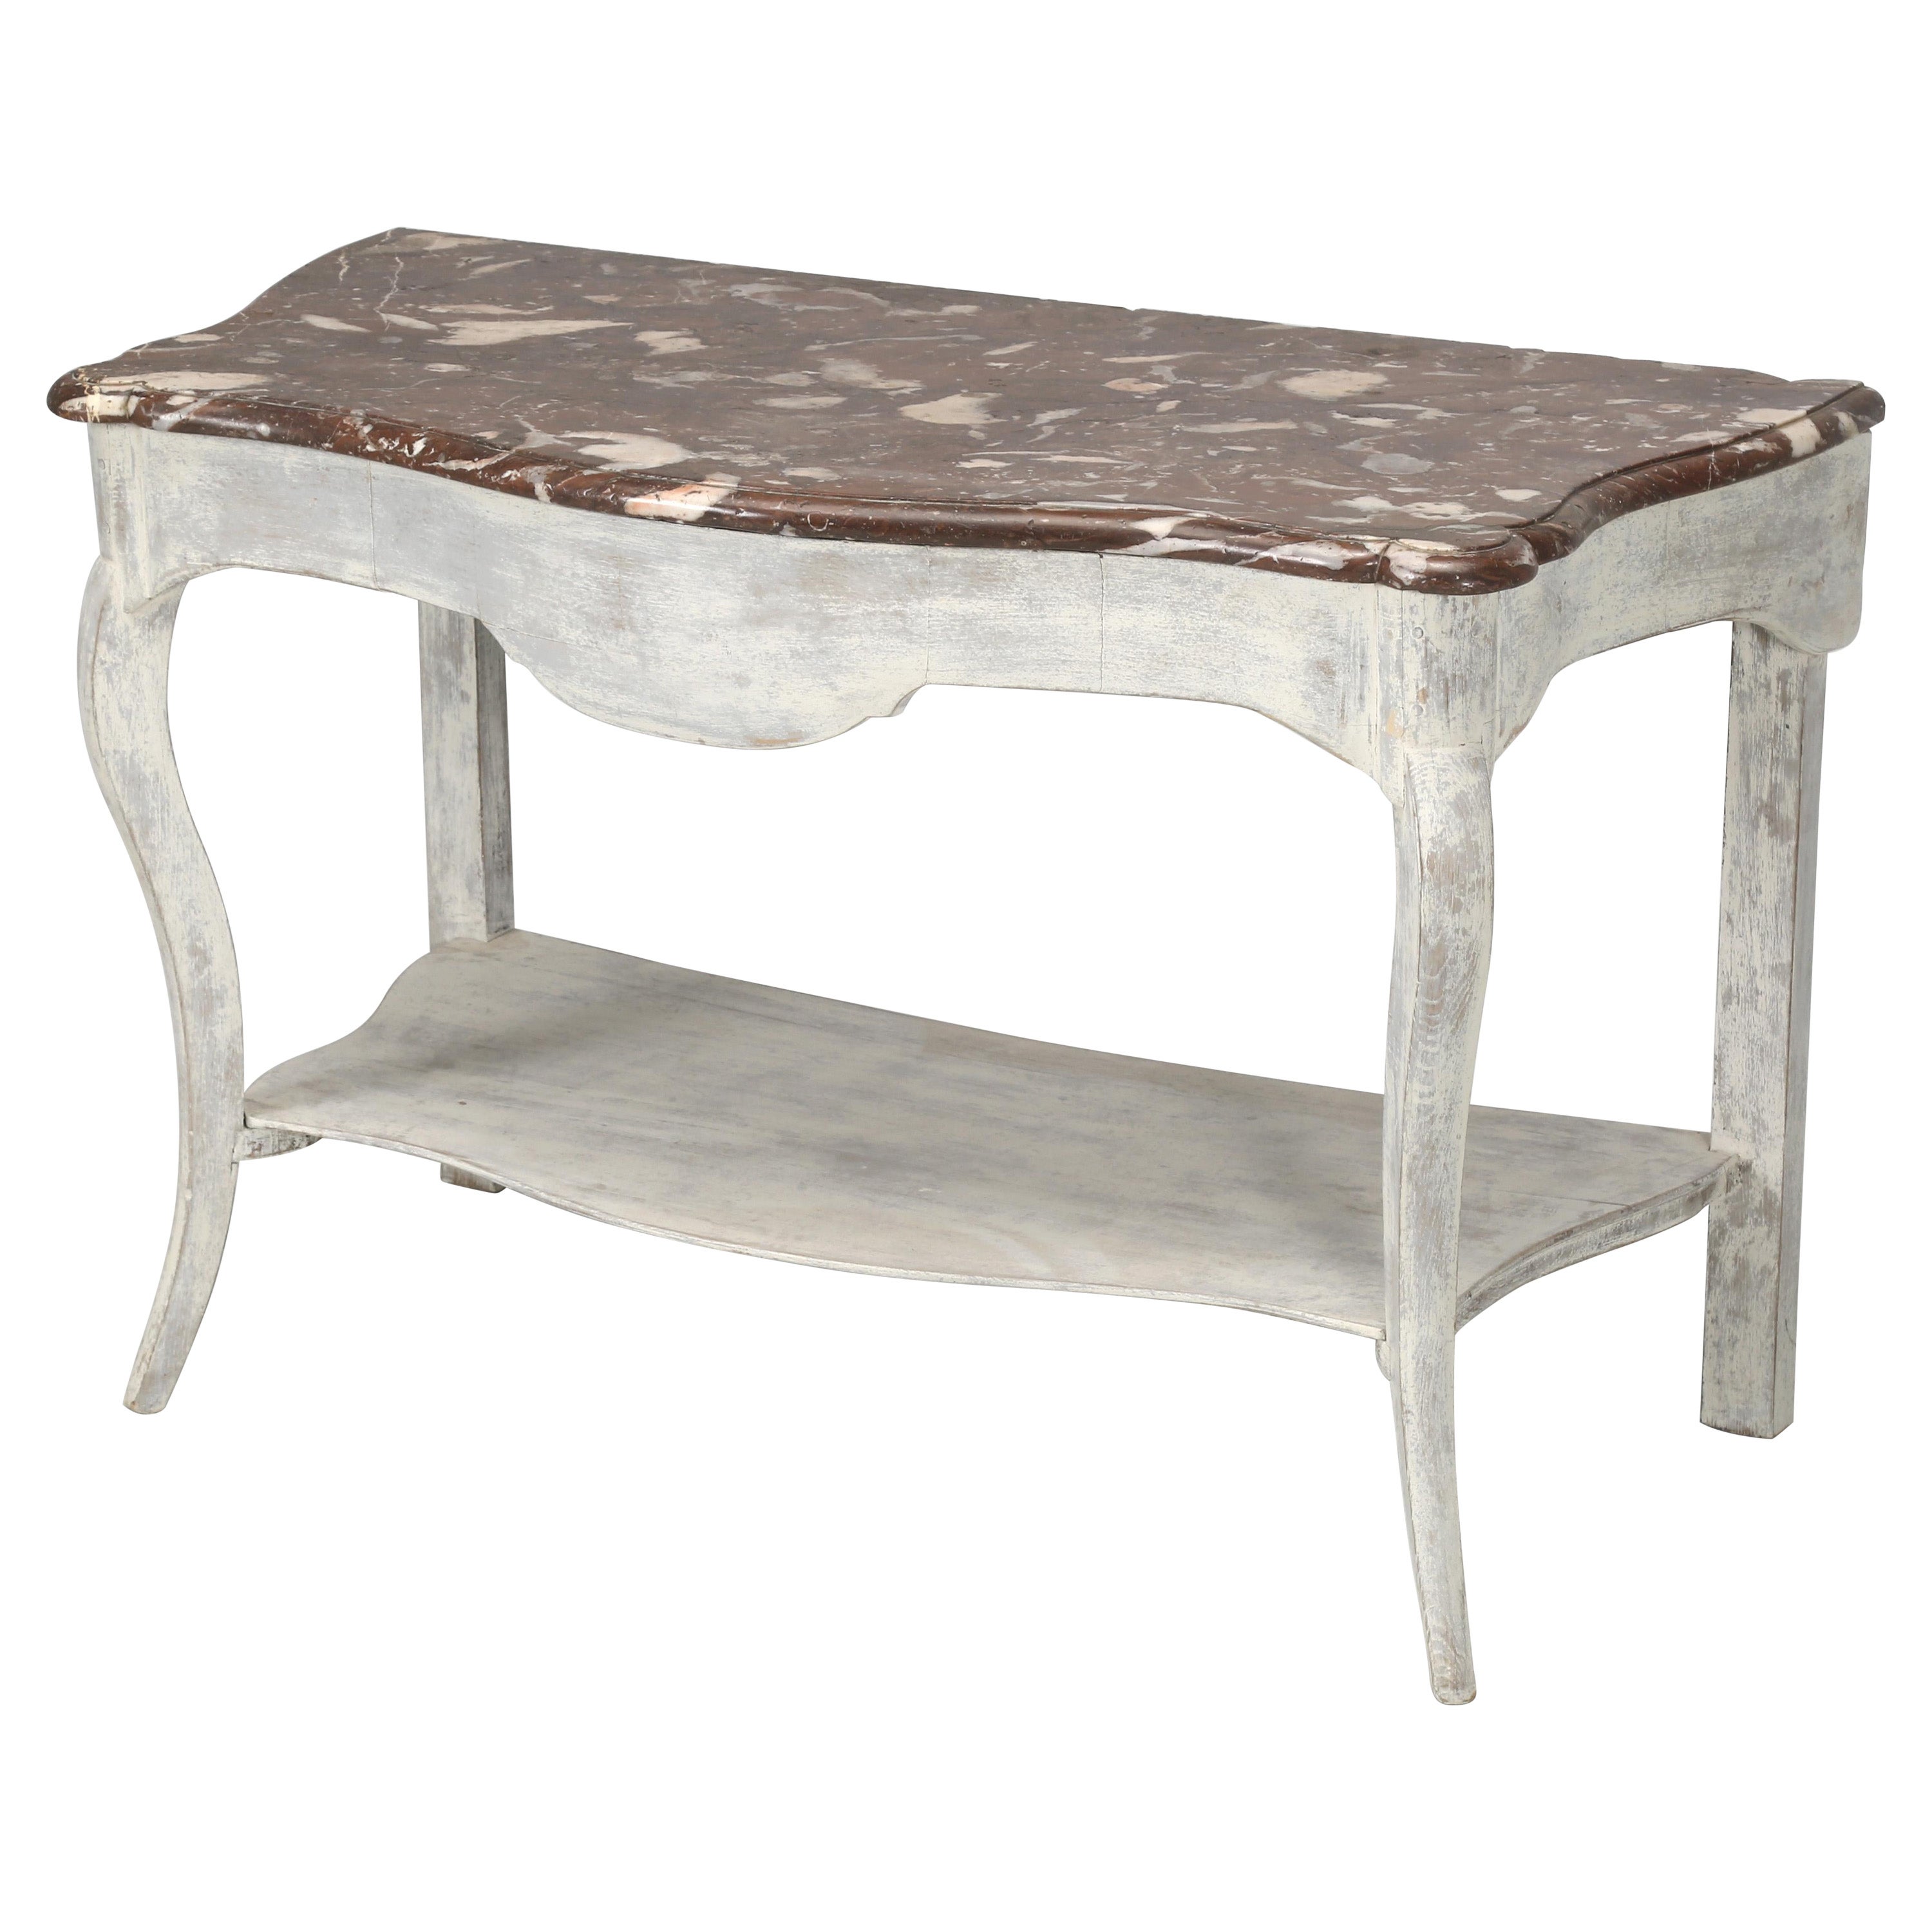 Table console ancienne peinte avec un superbe plateau en marbre, probablement suédois